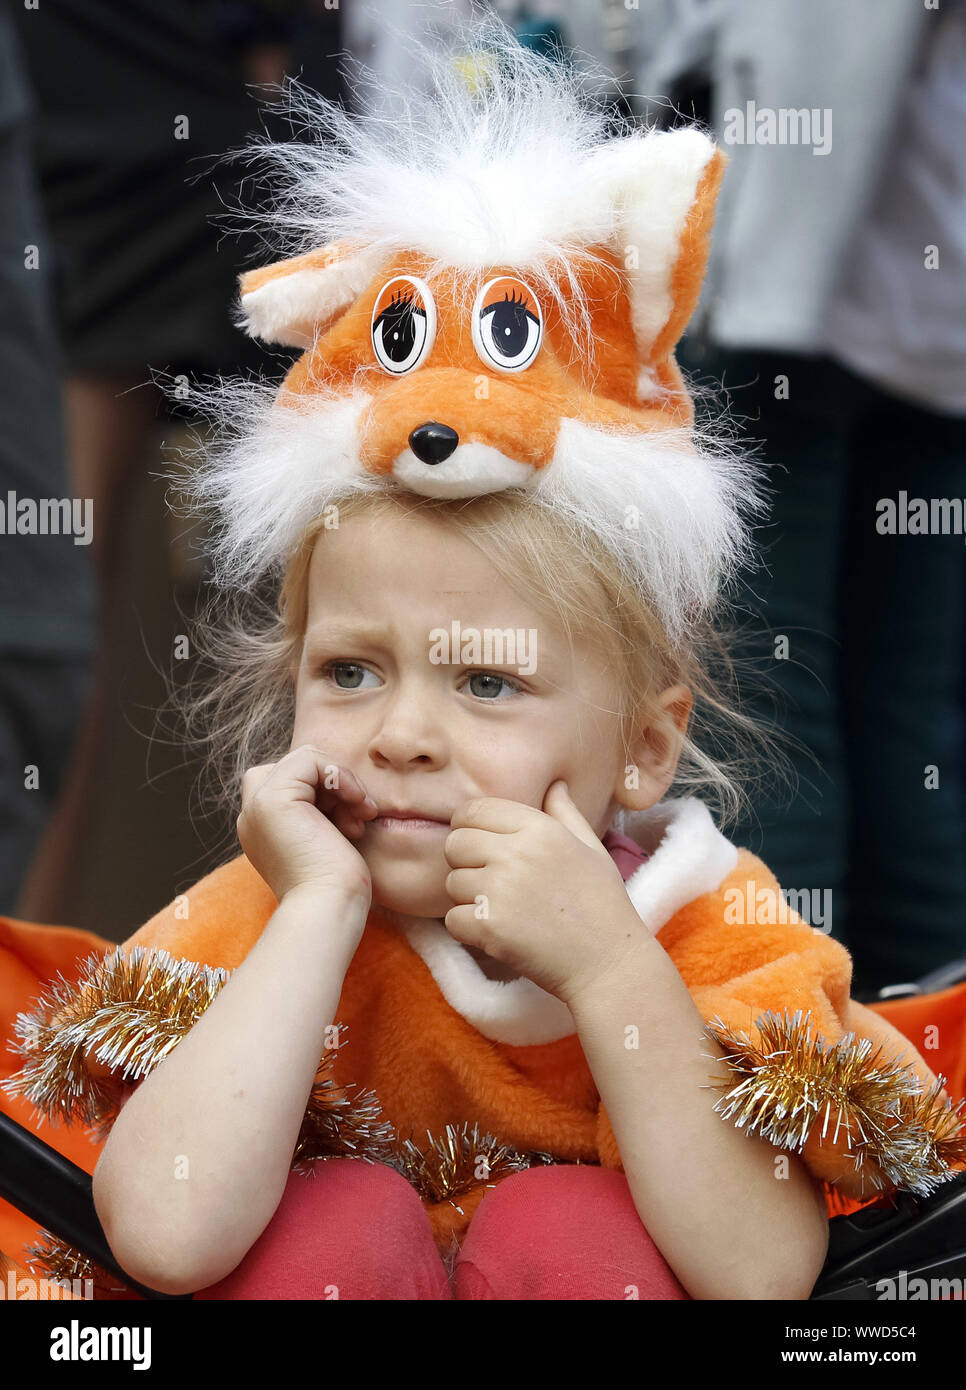 Kleines Mädchen in Fuchs Kostüm saugen an lollipop Stockfotografie - Alamy